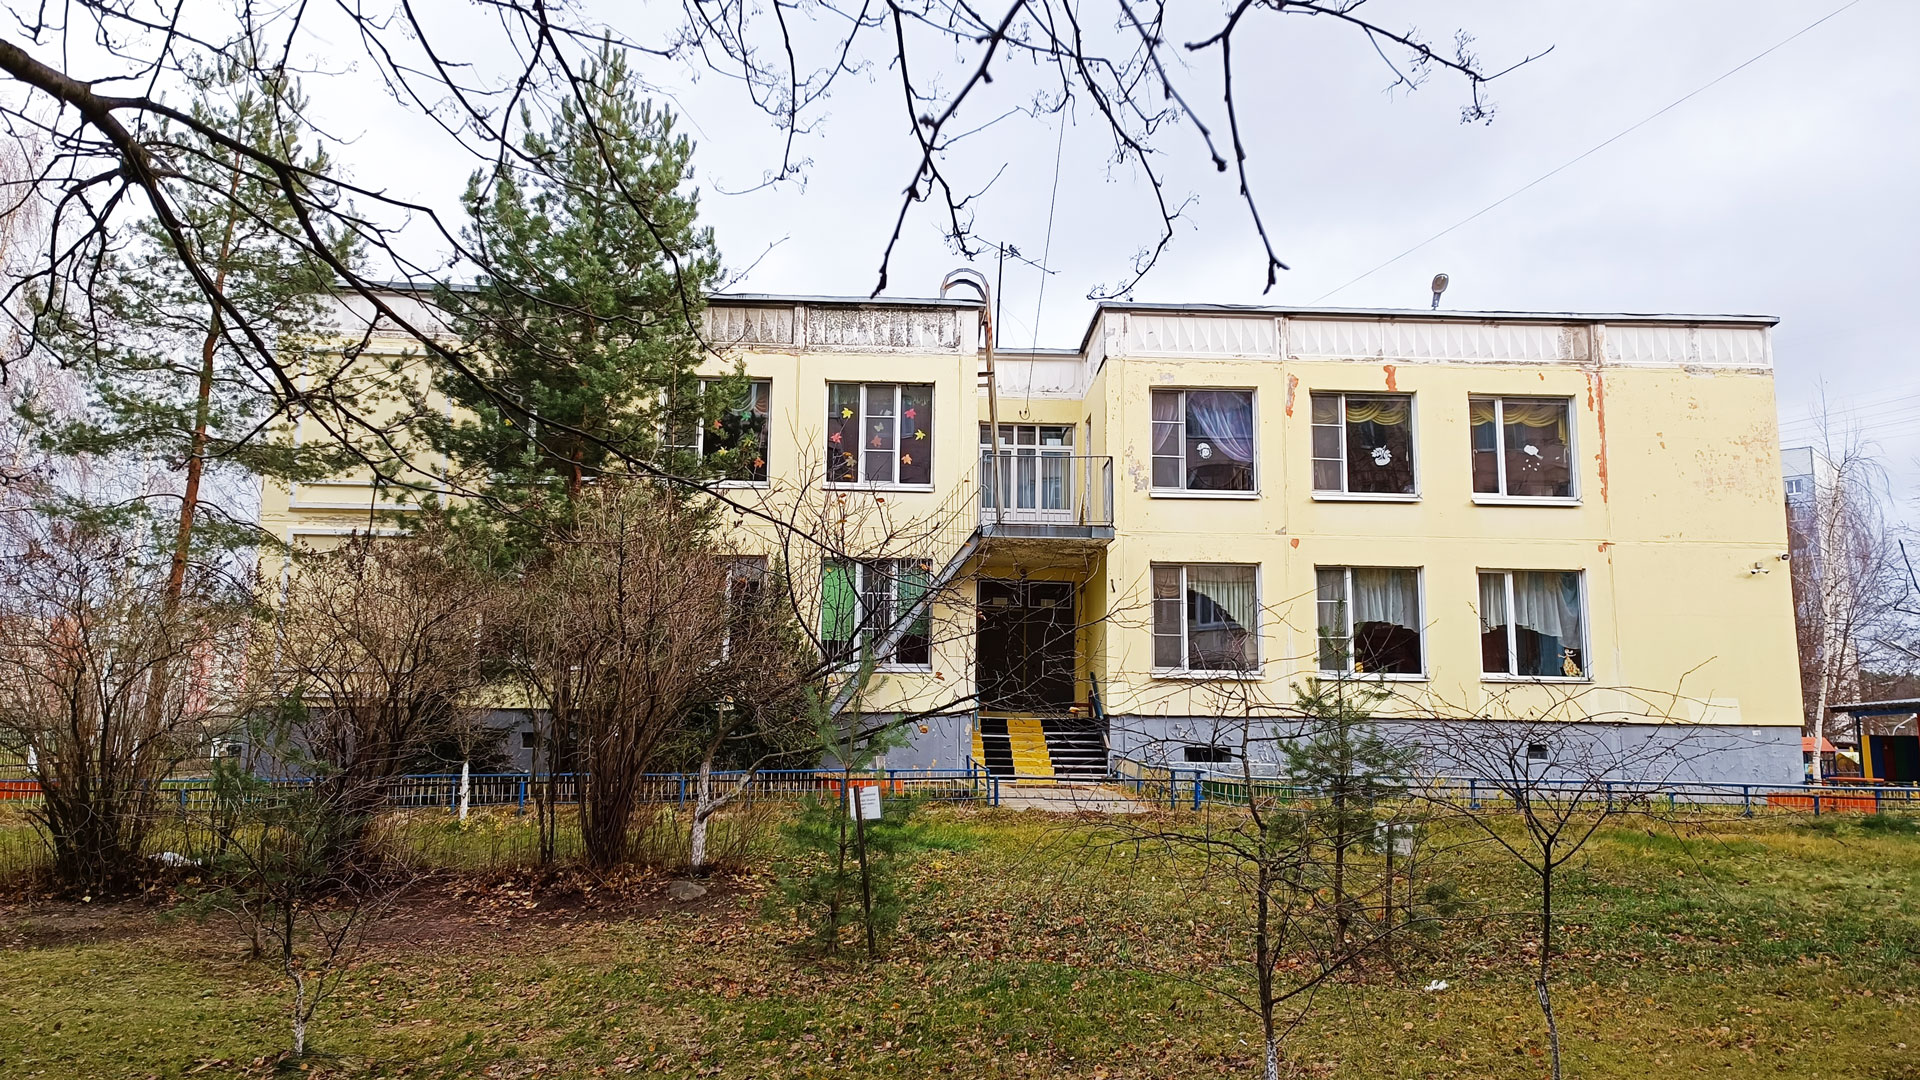 Детский сад 112 Ярославль: общий вид здания.